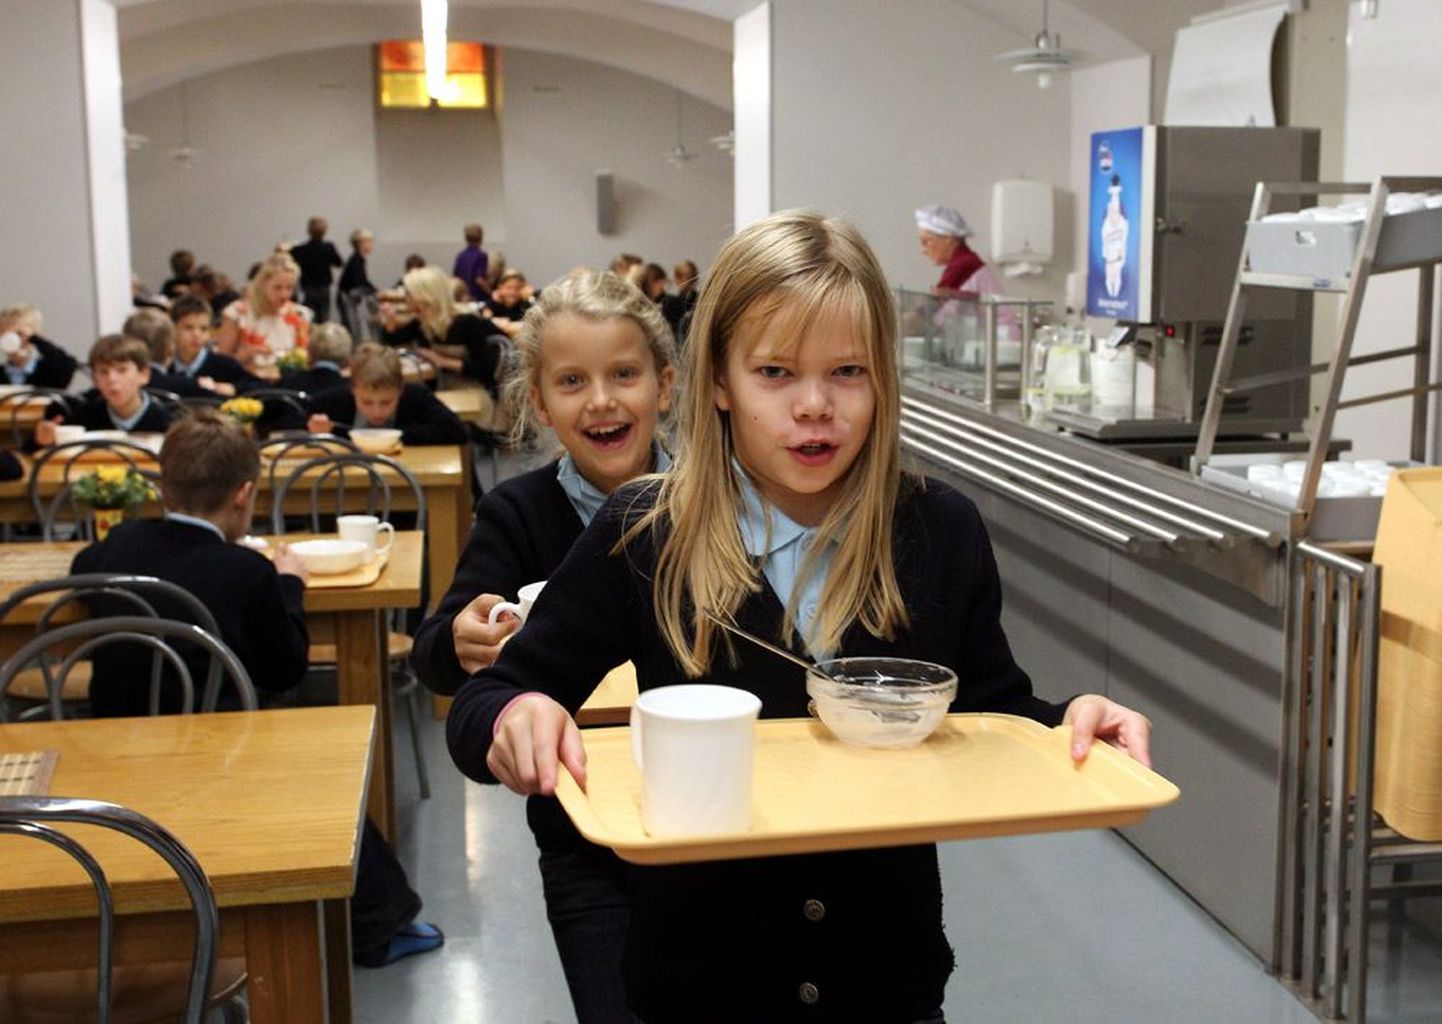 Tallinna reaalkoolis sõid lapsed eile lõunasöögiks juurviljasuppi ja kohupiimakreemi. Ühe lapse lõunasöögile kulub 1,15 eurot, mille tasuvad riik ja linn.